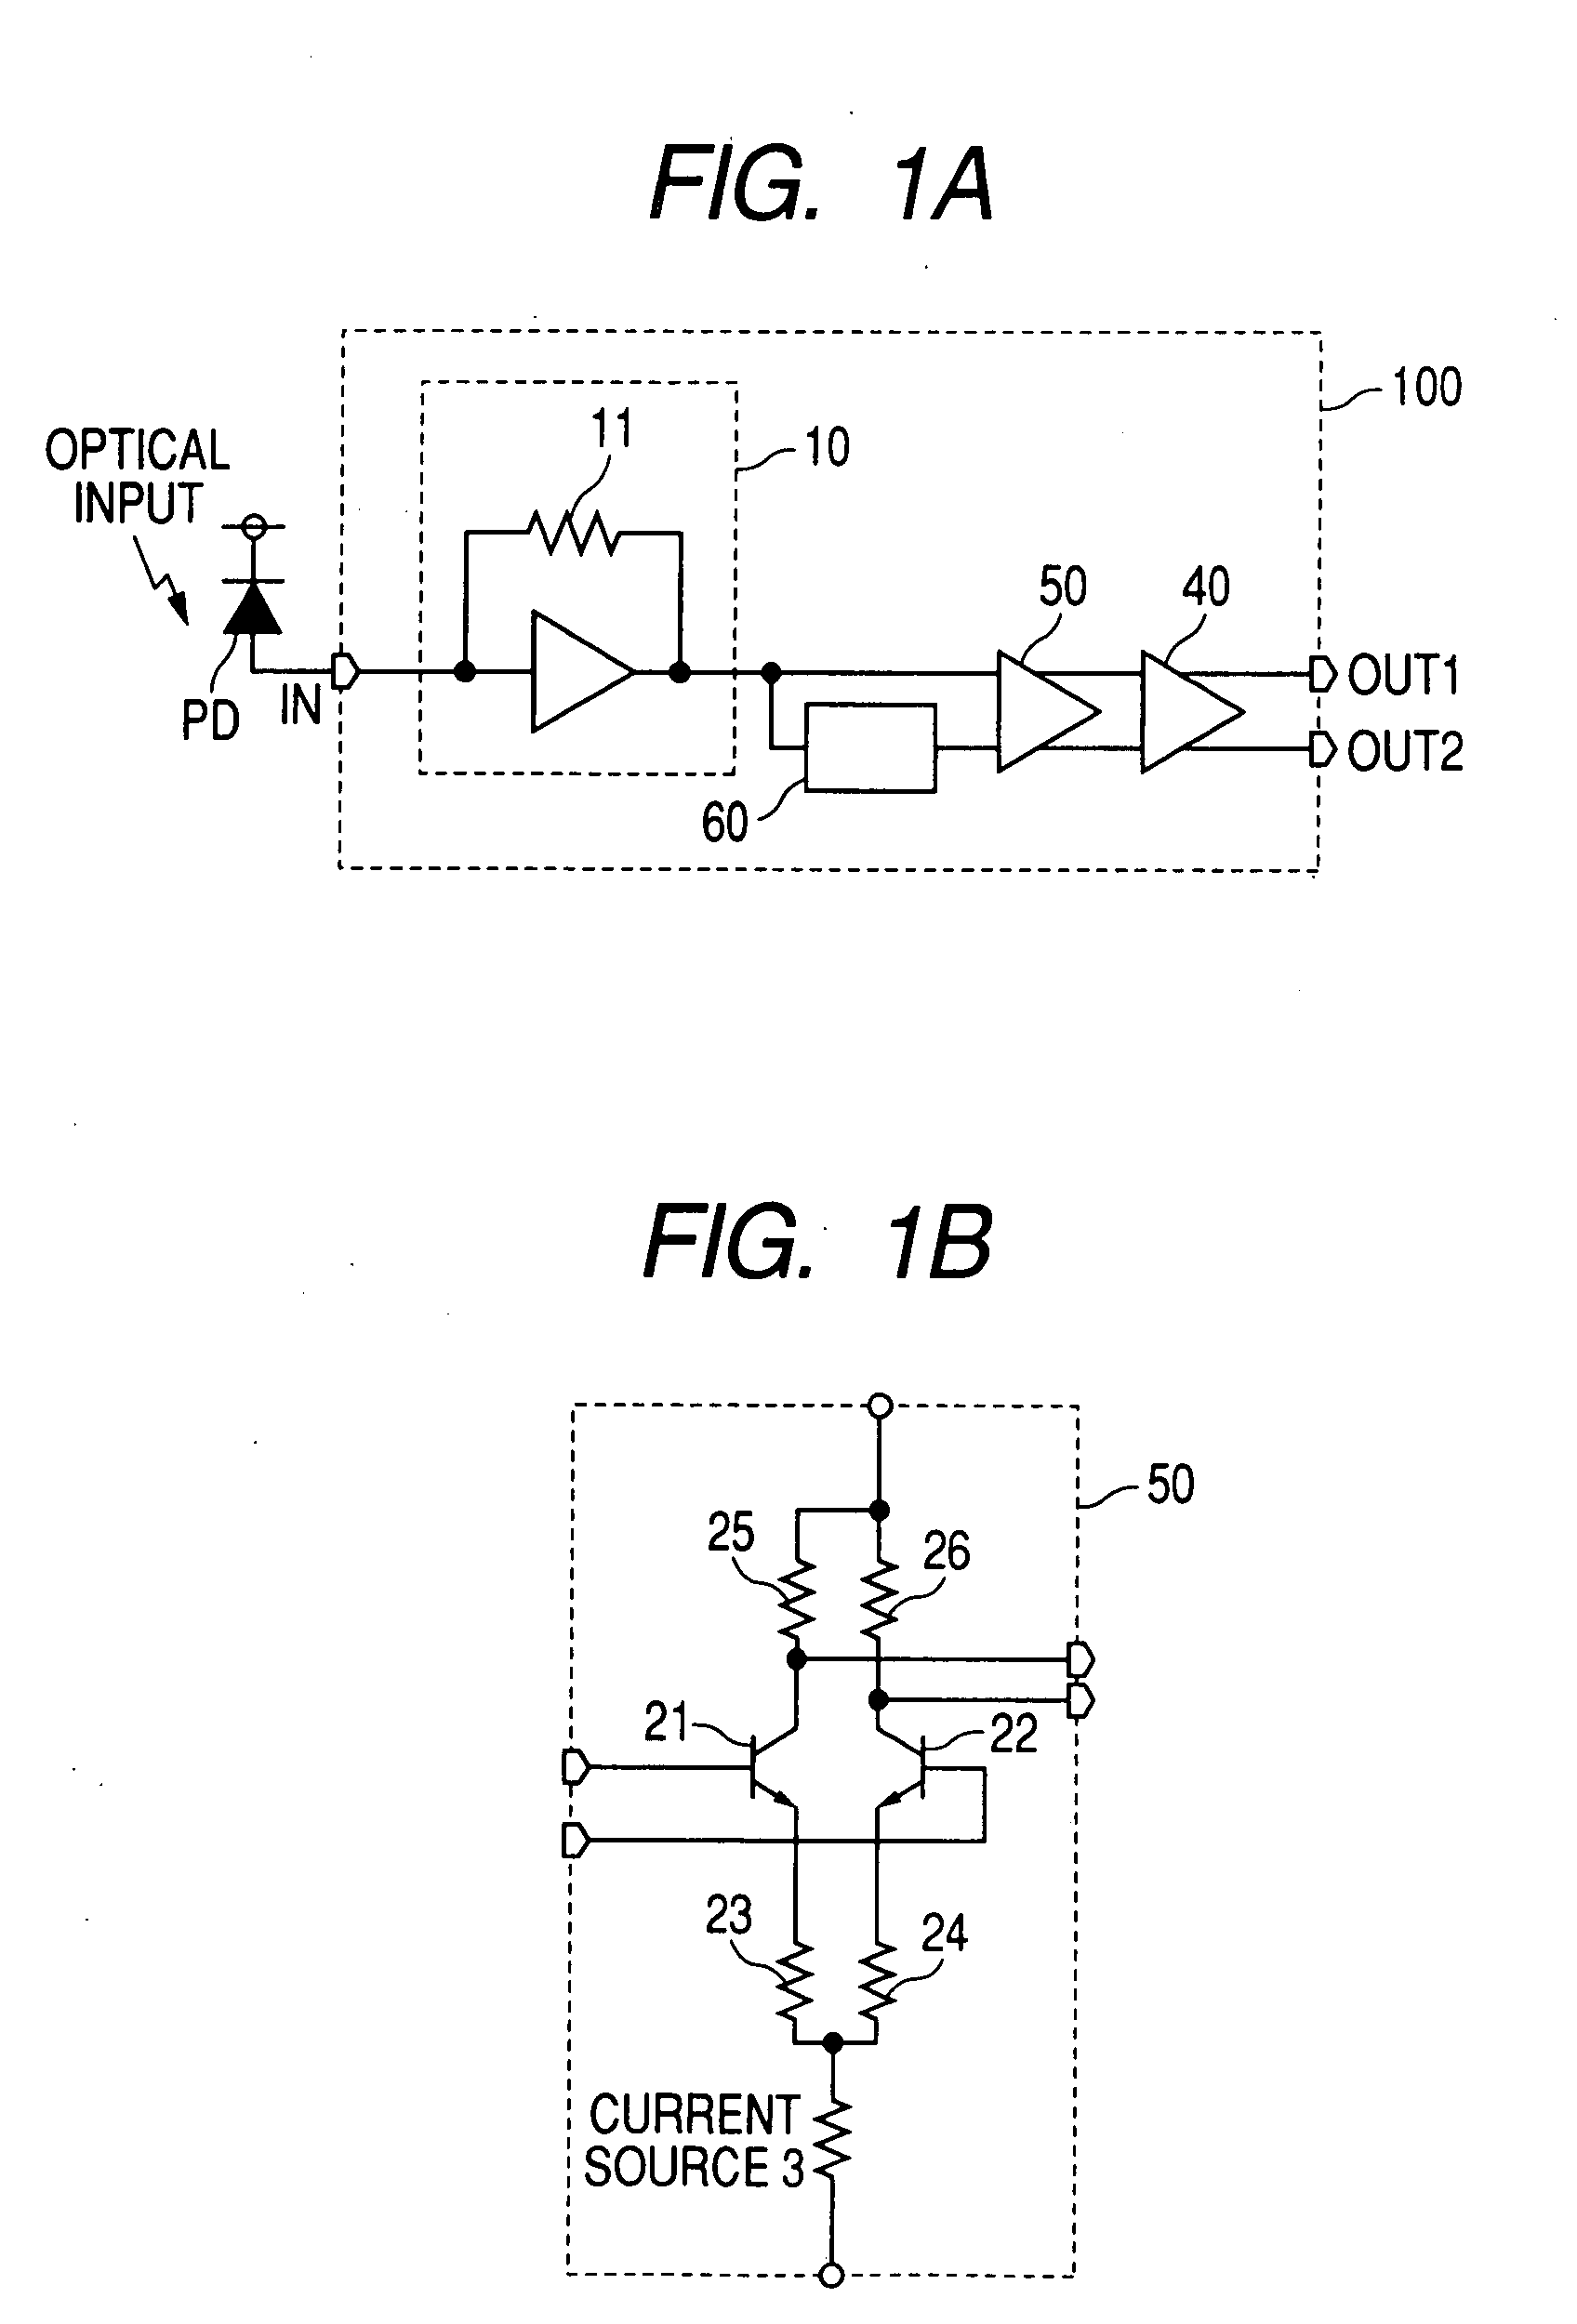 Optical signal receiving circuit and optical signal receiving apparatus